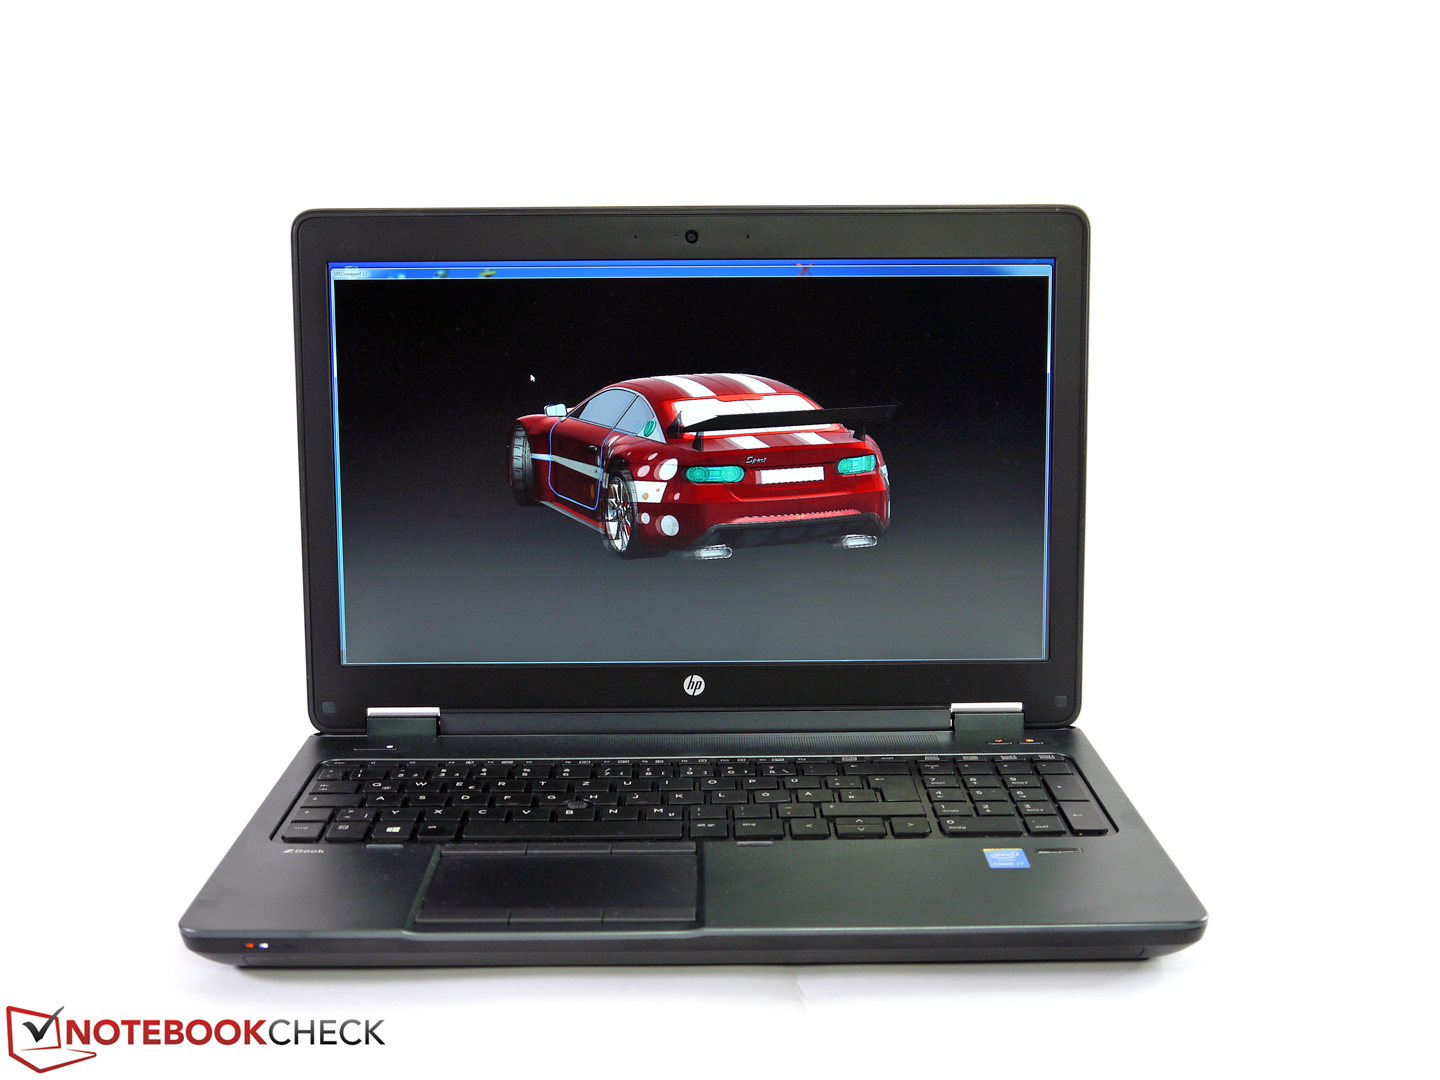 Breve análisis de la estación de trabajo HP ZBook 15 G2 - Notebookcheck.org